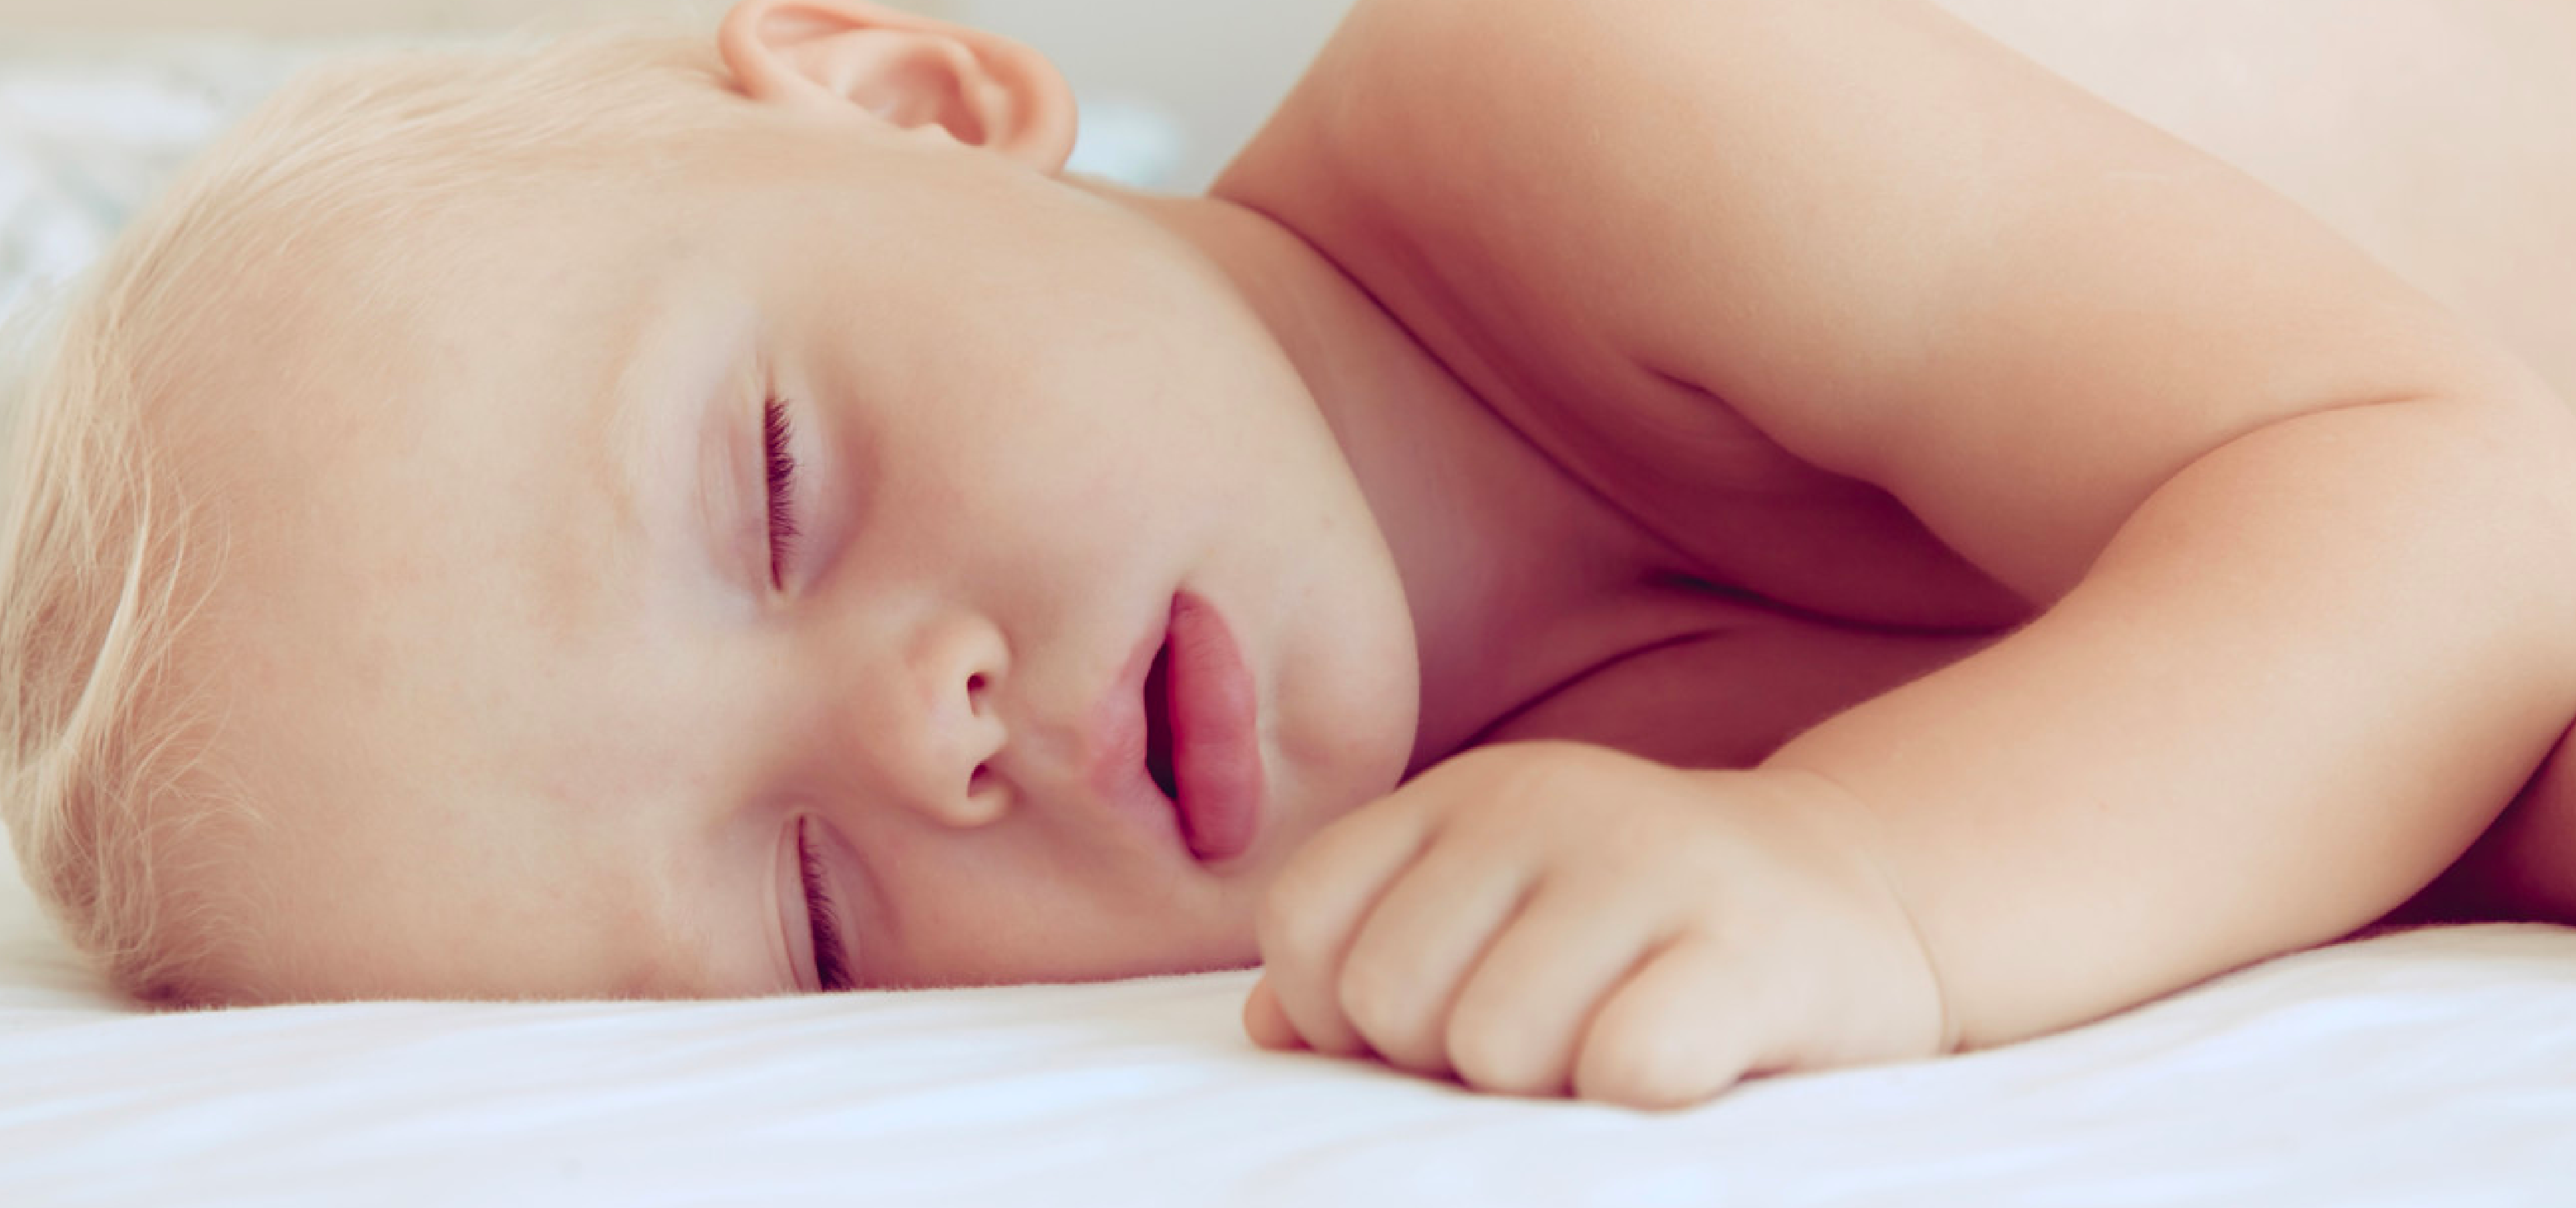 A qué edad es aconsejable empezar a usar almohada en niños y de qué tipo ?